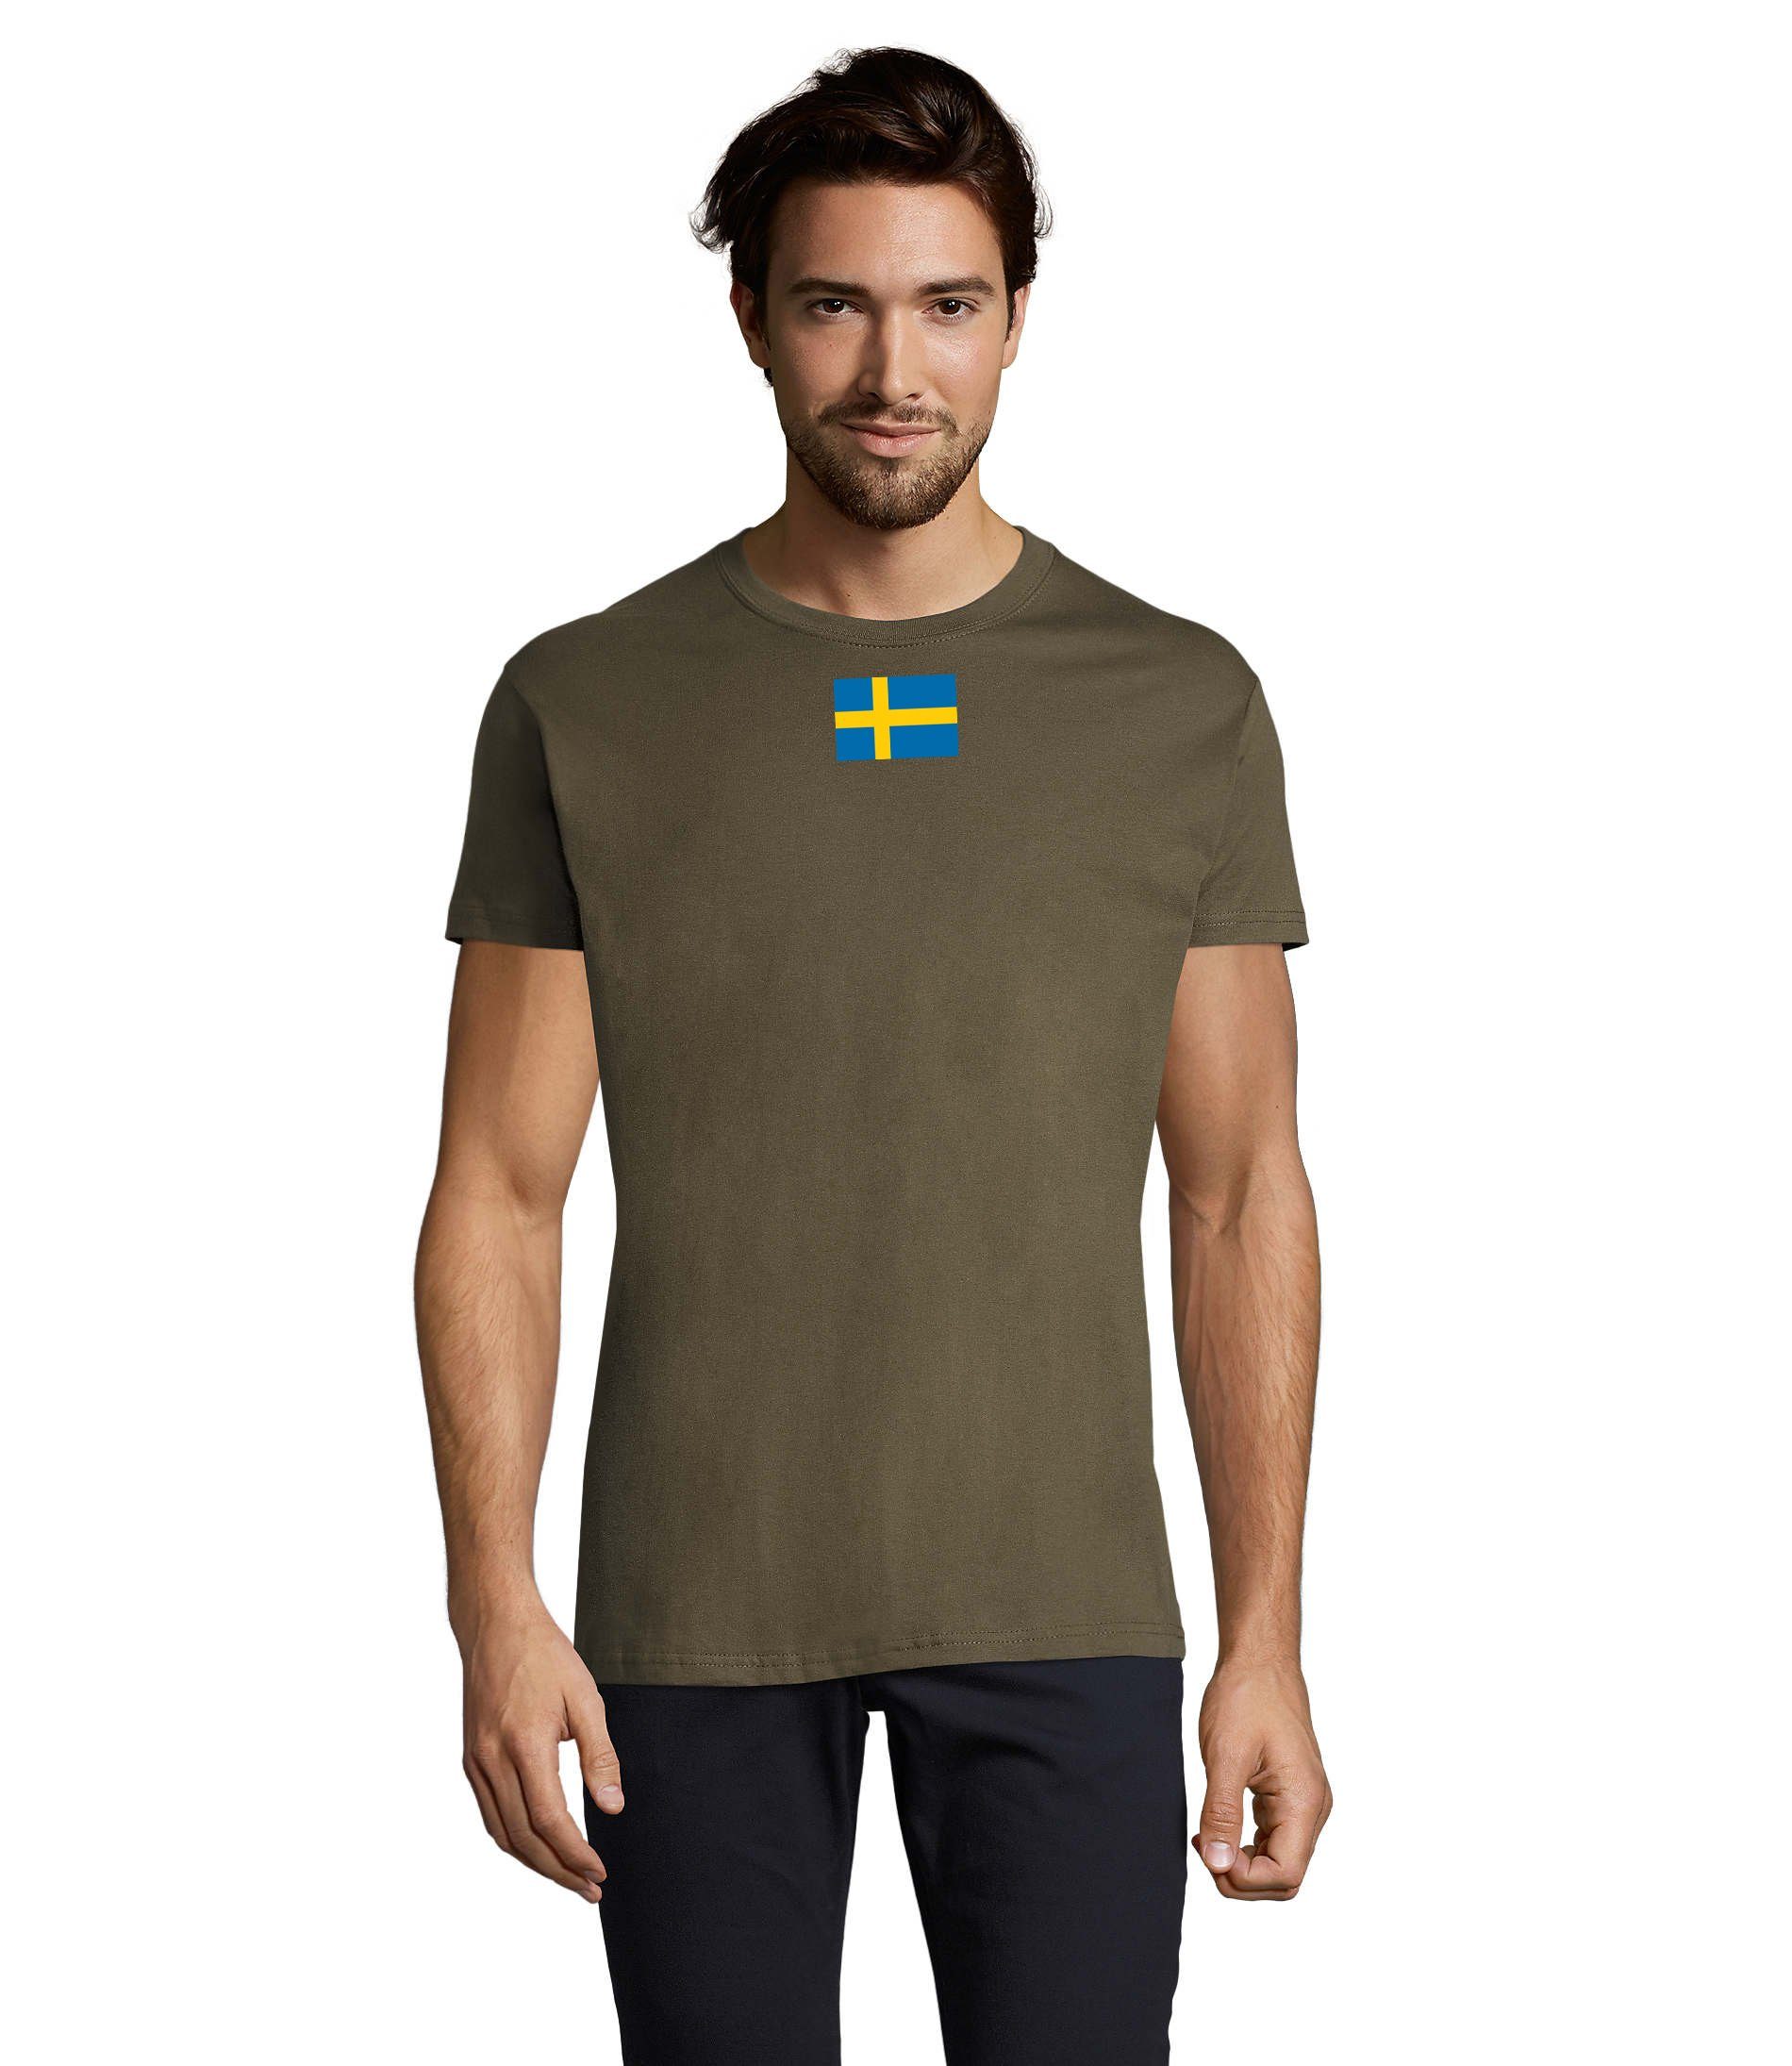 Blondie & Brownie T-Shirt Herren Schweden Ukraine USA Army Armee Nato Peace Air Force